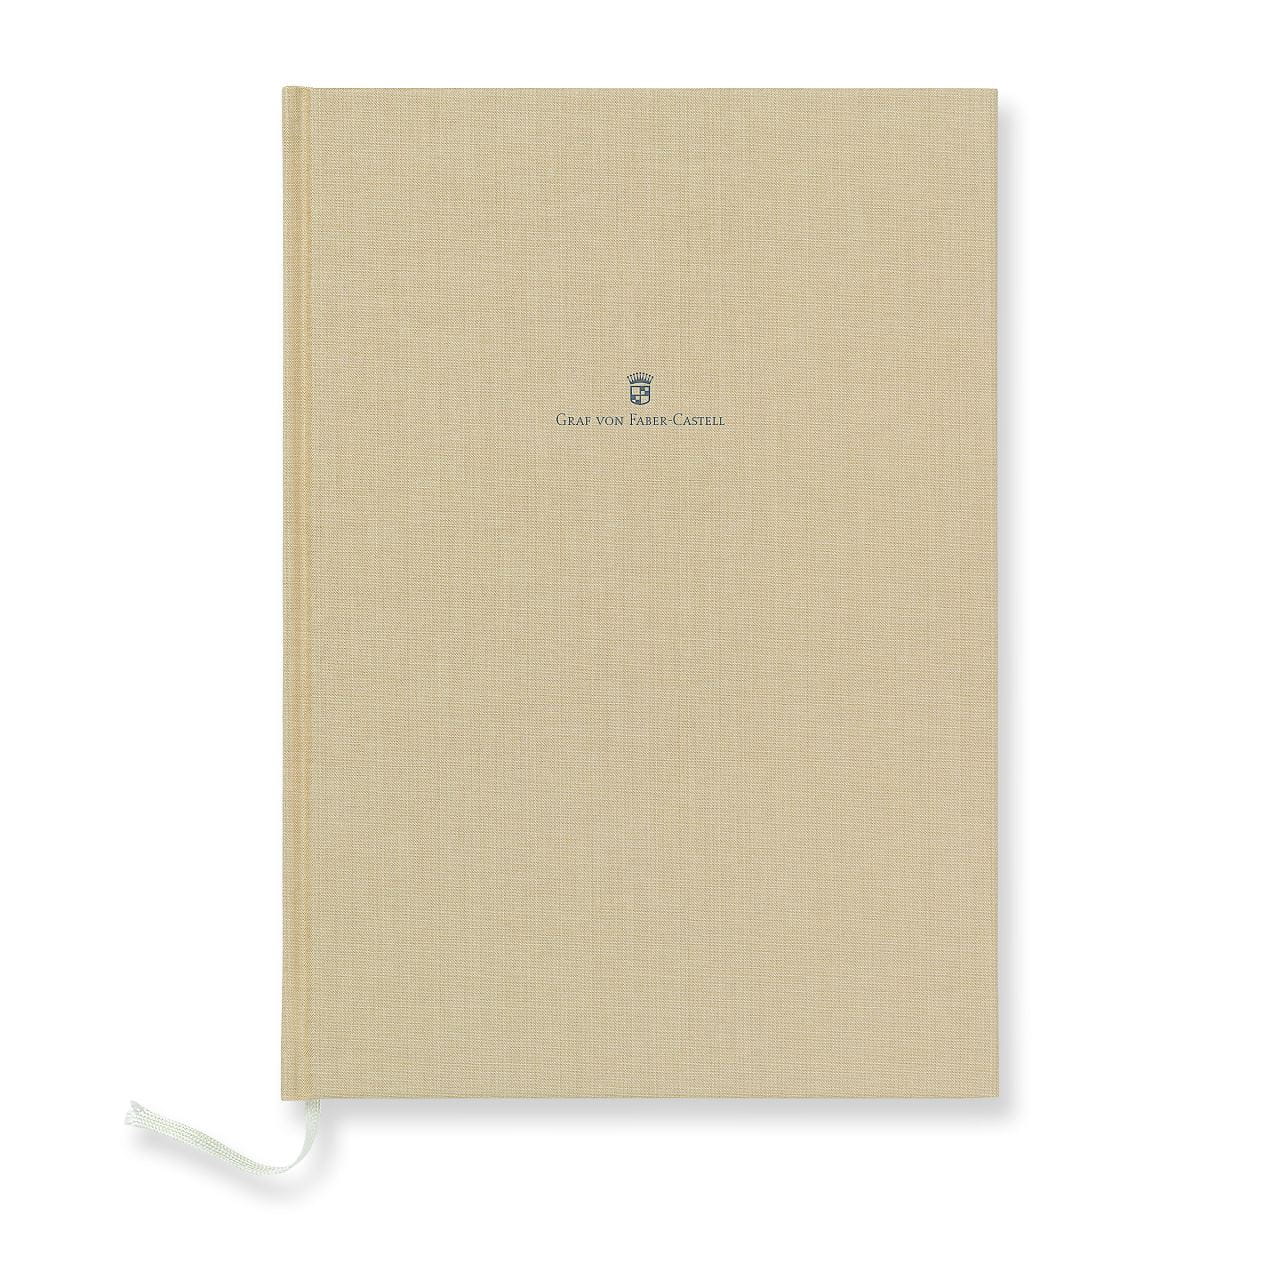 Graf-von-Faber-Castell - Cuaderno con cubierta de lino tamaño A4 marrón dorado